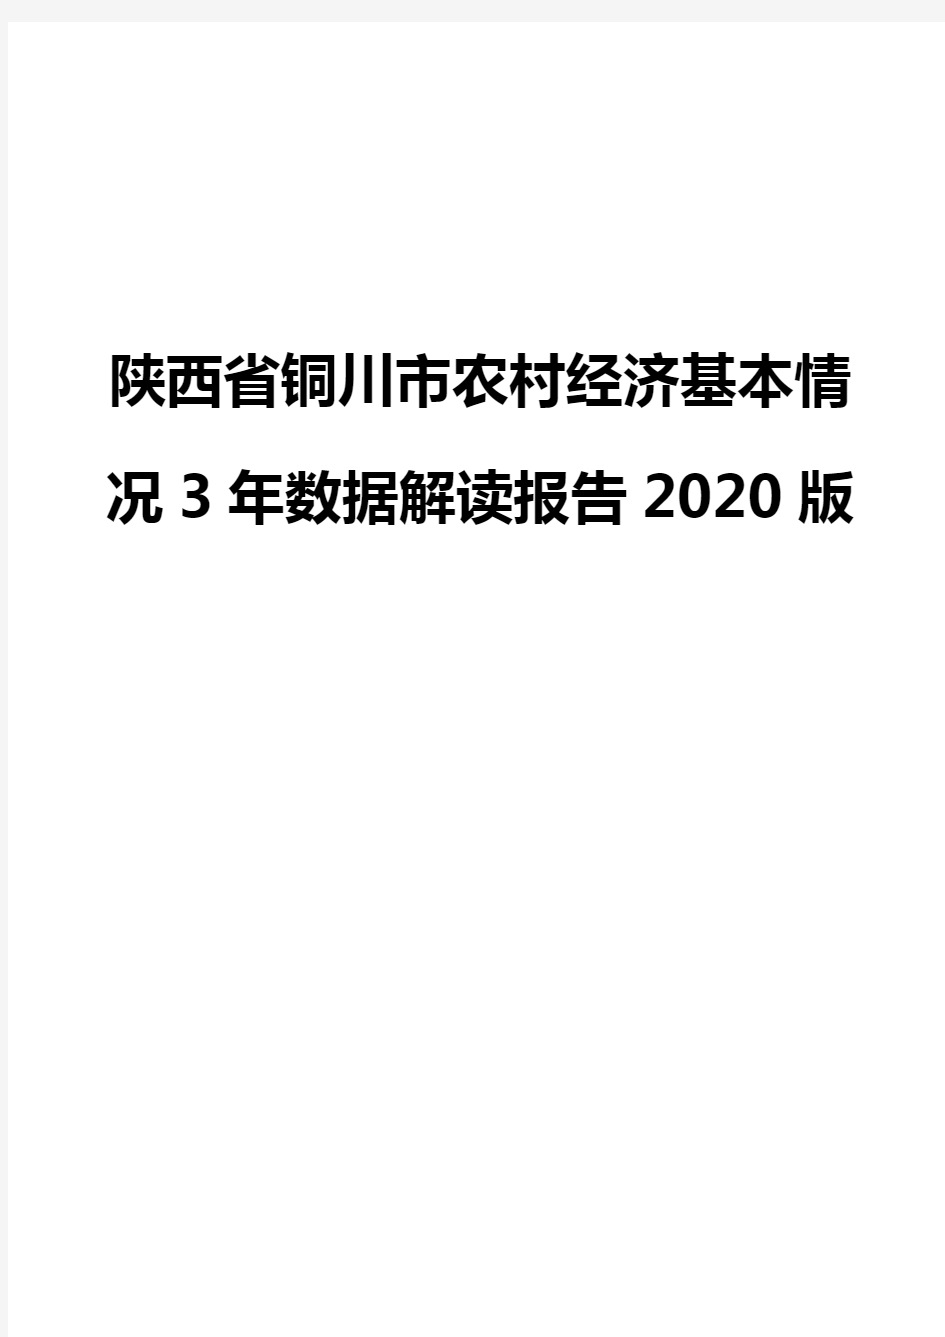 陕西省铜川市农村经济基本情况3年数据解读报告2020版